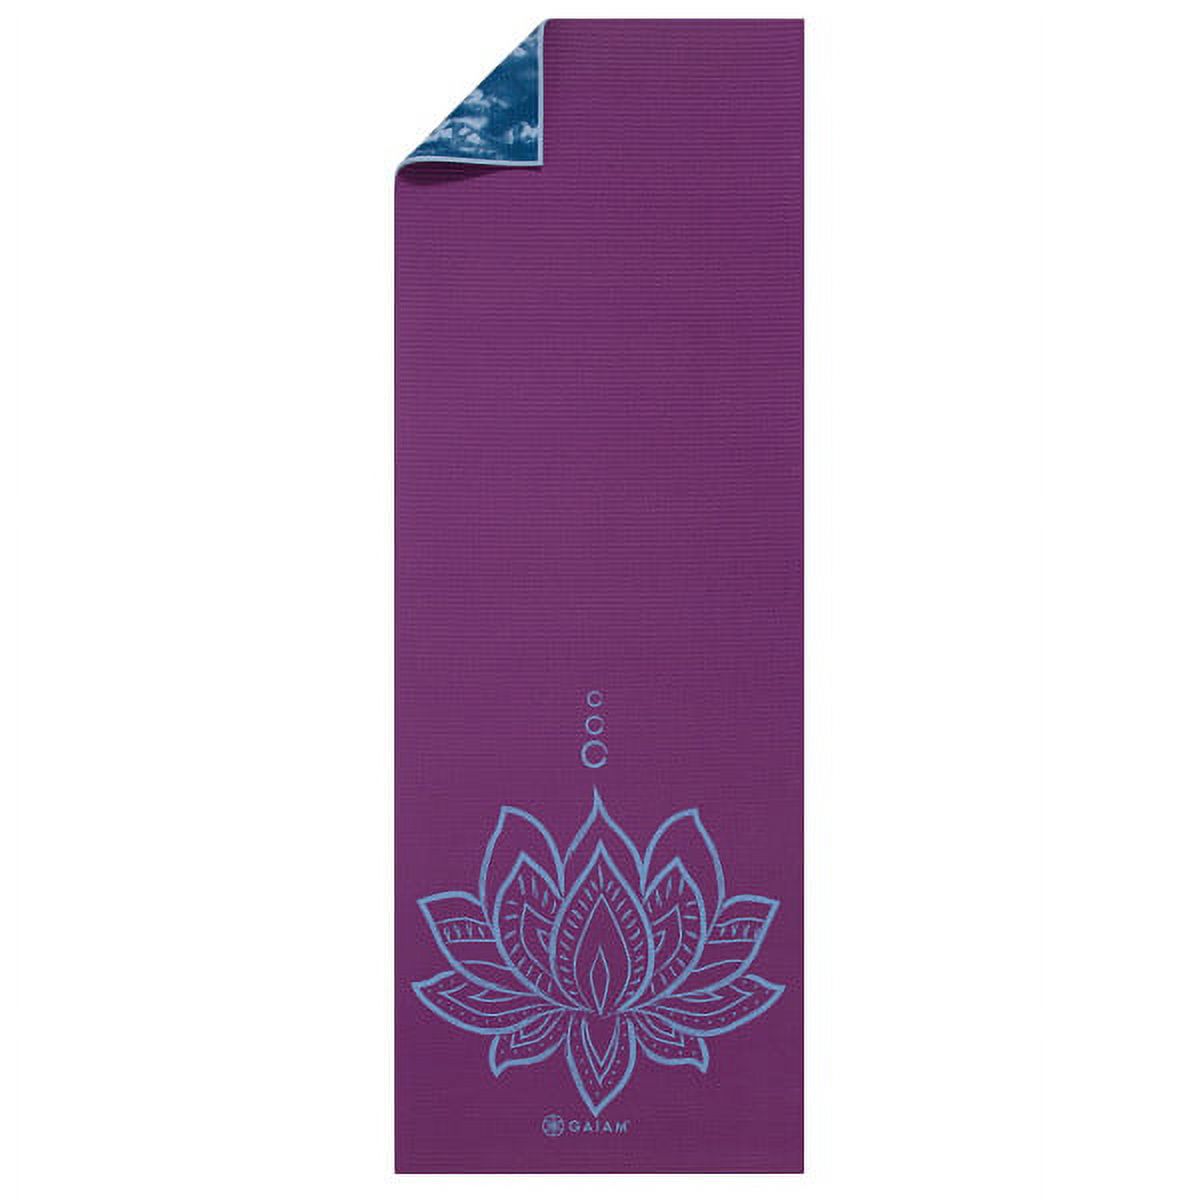 Gaiam Premium Print Reversible Yoga Mat, Purple Lotus, 6mm - image 3 of 8